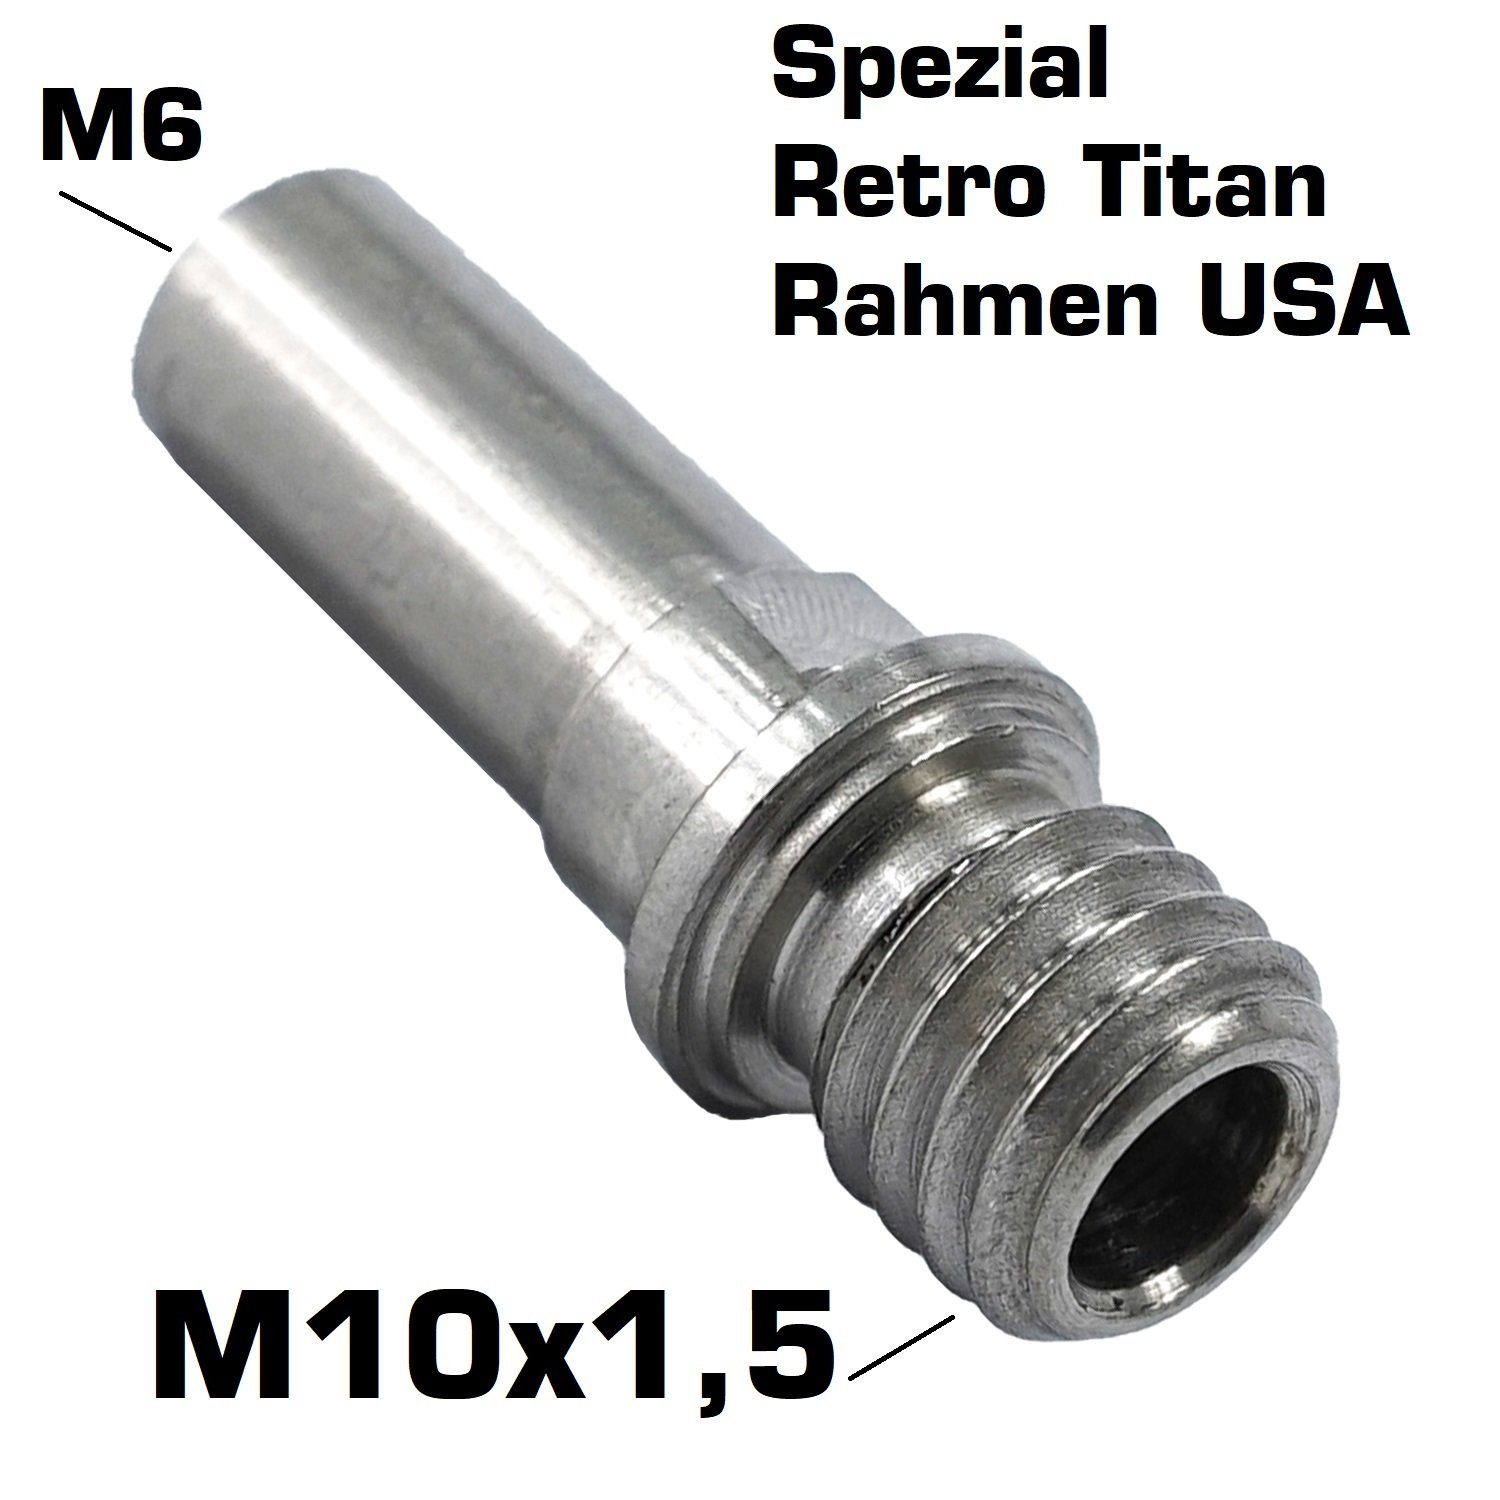 Felgenbremse M6 Gabel M10x1.25 Fantic26 M8 Hülsenmutter Bremsbelag Cantisockel 5-16" Titan